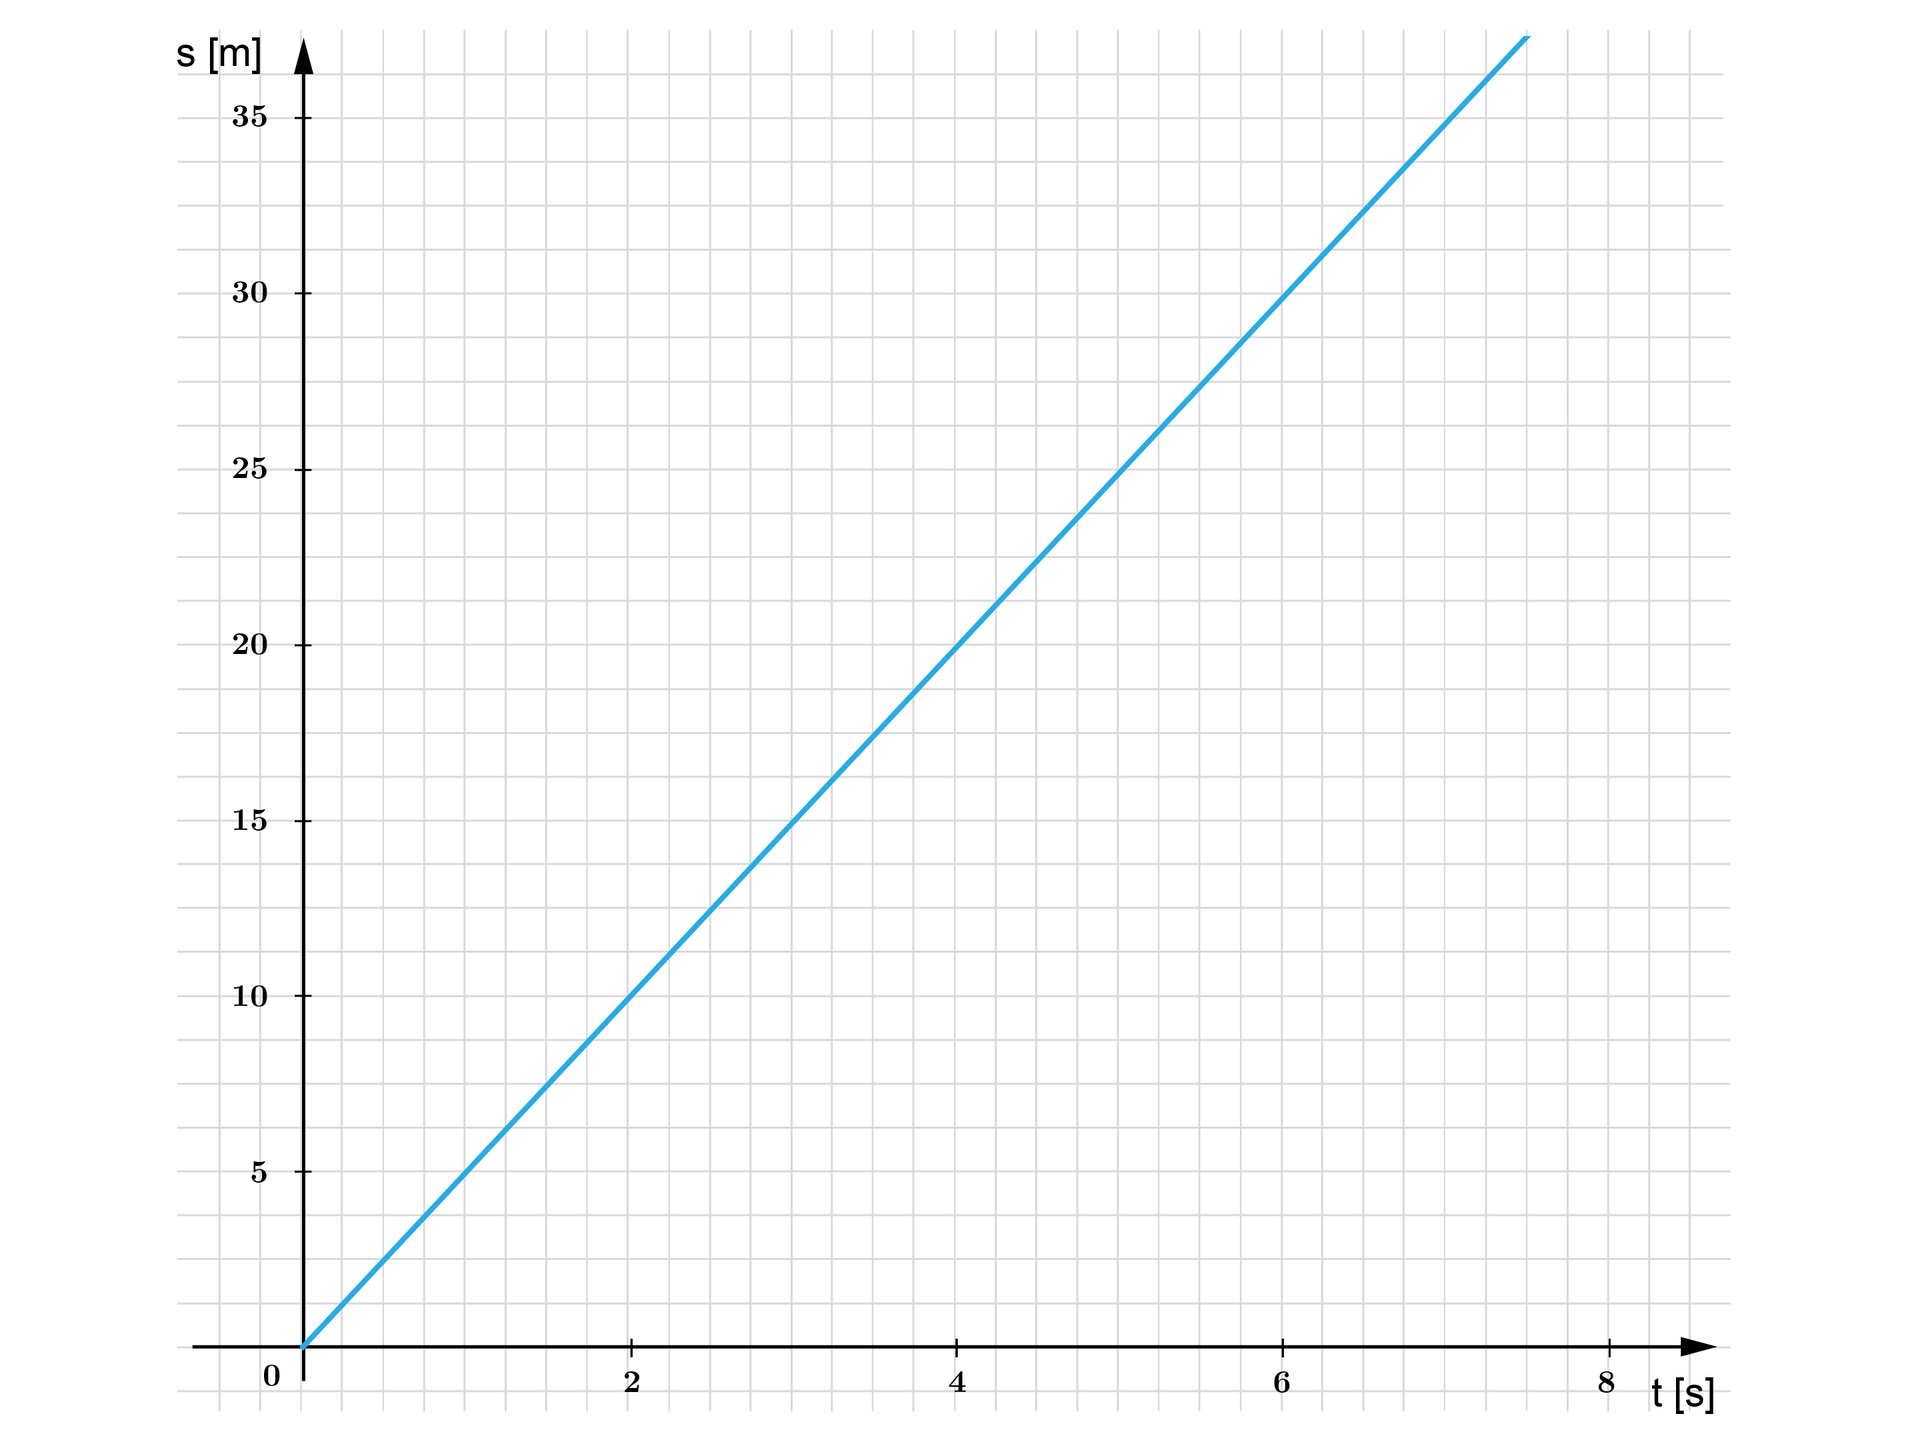 Ilustracja przedstawia poziomą oś X od zero do ośmiu, jednostką jest czas mierzony w sekundach, oraz pionową oś Y od zera do trzydziestu pięciu, jednostką są metry. Na rysunku zaznaczono również wykres funkcji przechodzący przez punkty nawias zero średnik zero koniec nawiasu, nawias dwa średnik dziesięć koniec nawiasu, nawias cztery średnik dwadzieścia koniec nawiasu.